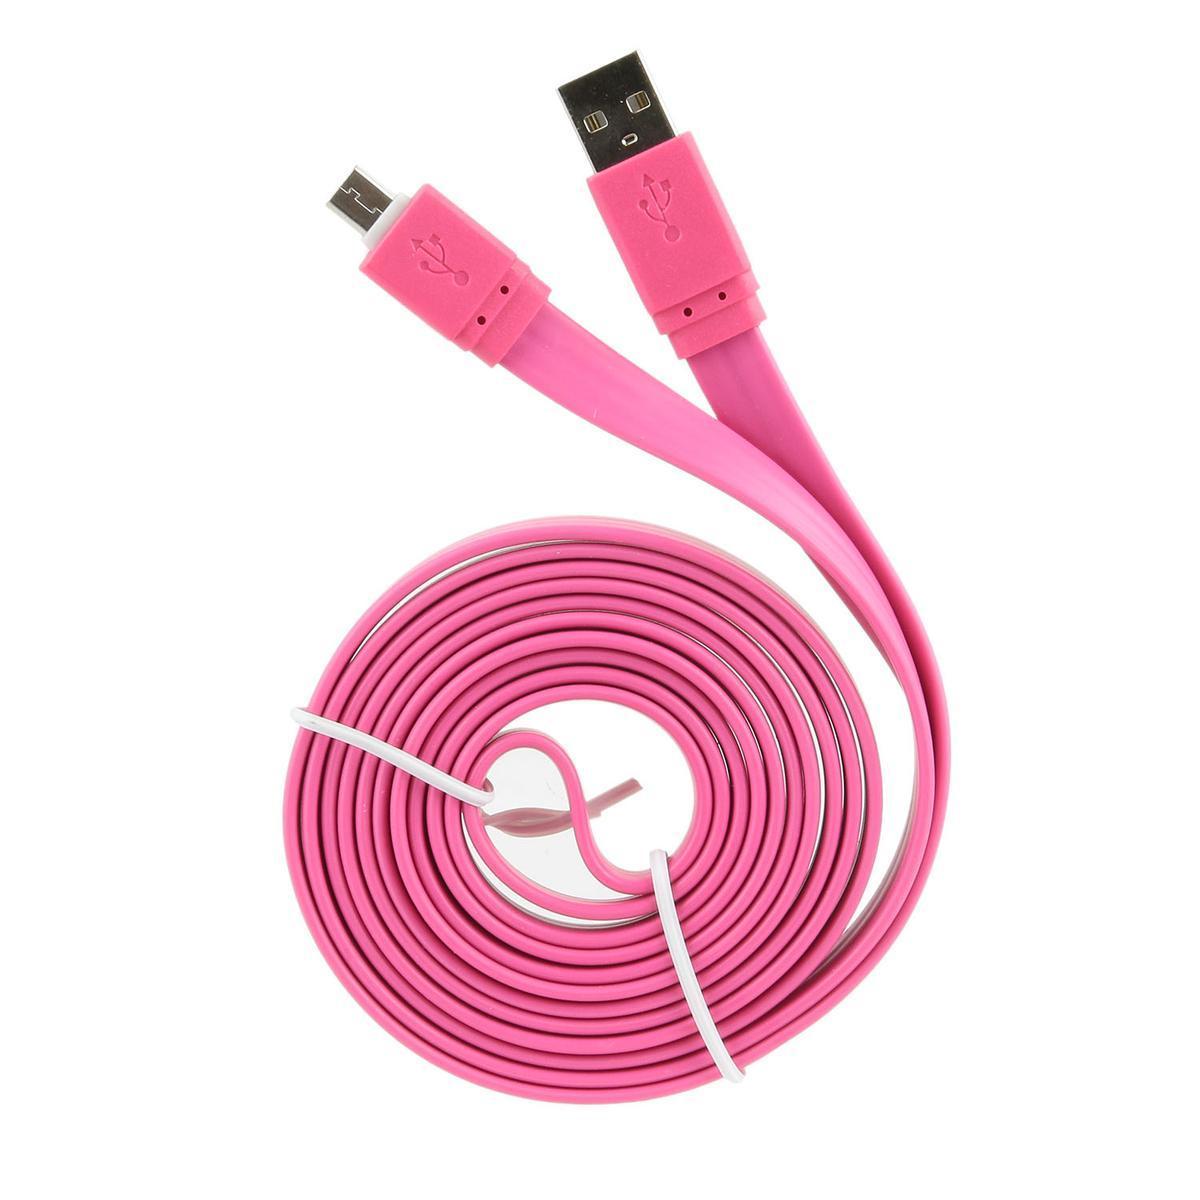 Câble large charge et synchronisation de données Micro-USB - L 2 m - Noir, rose, violet, bleu - BE MIX